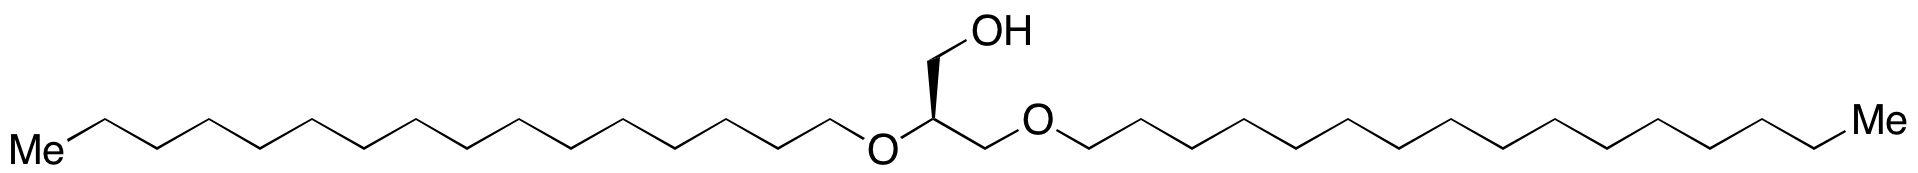 1,2-O-Dihexadecyl-sn-glycerol